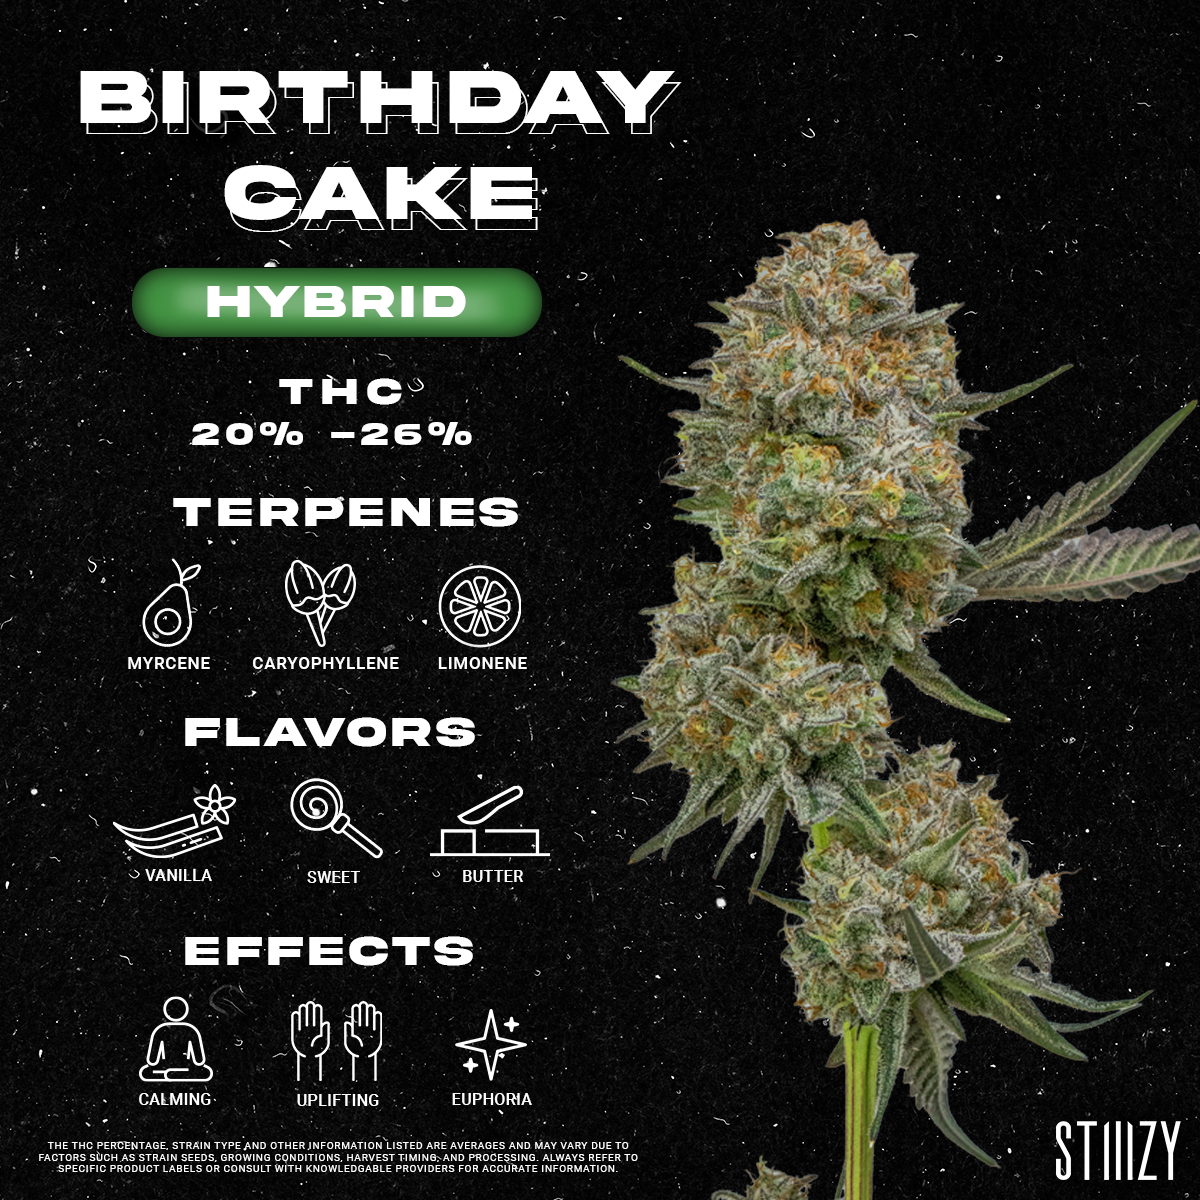 Birthday Cake Strain - Infographic